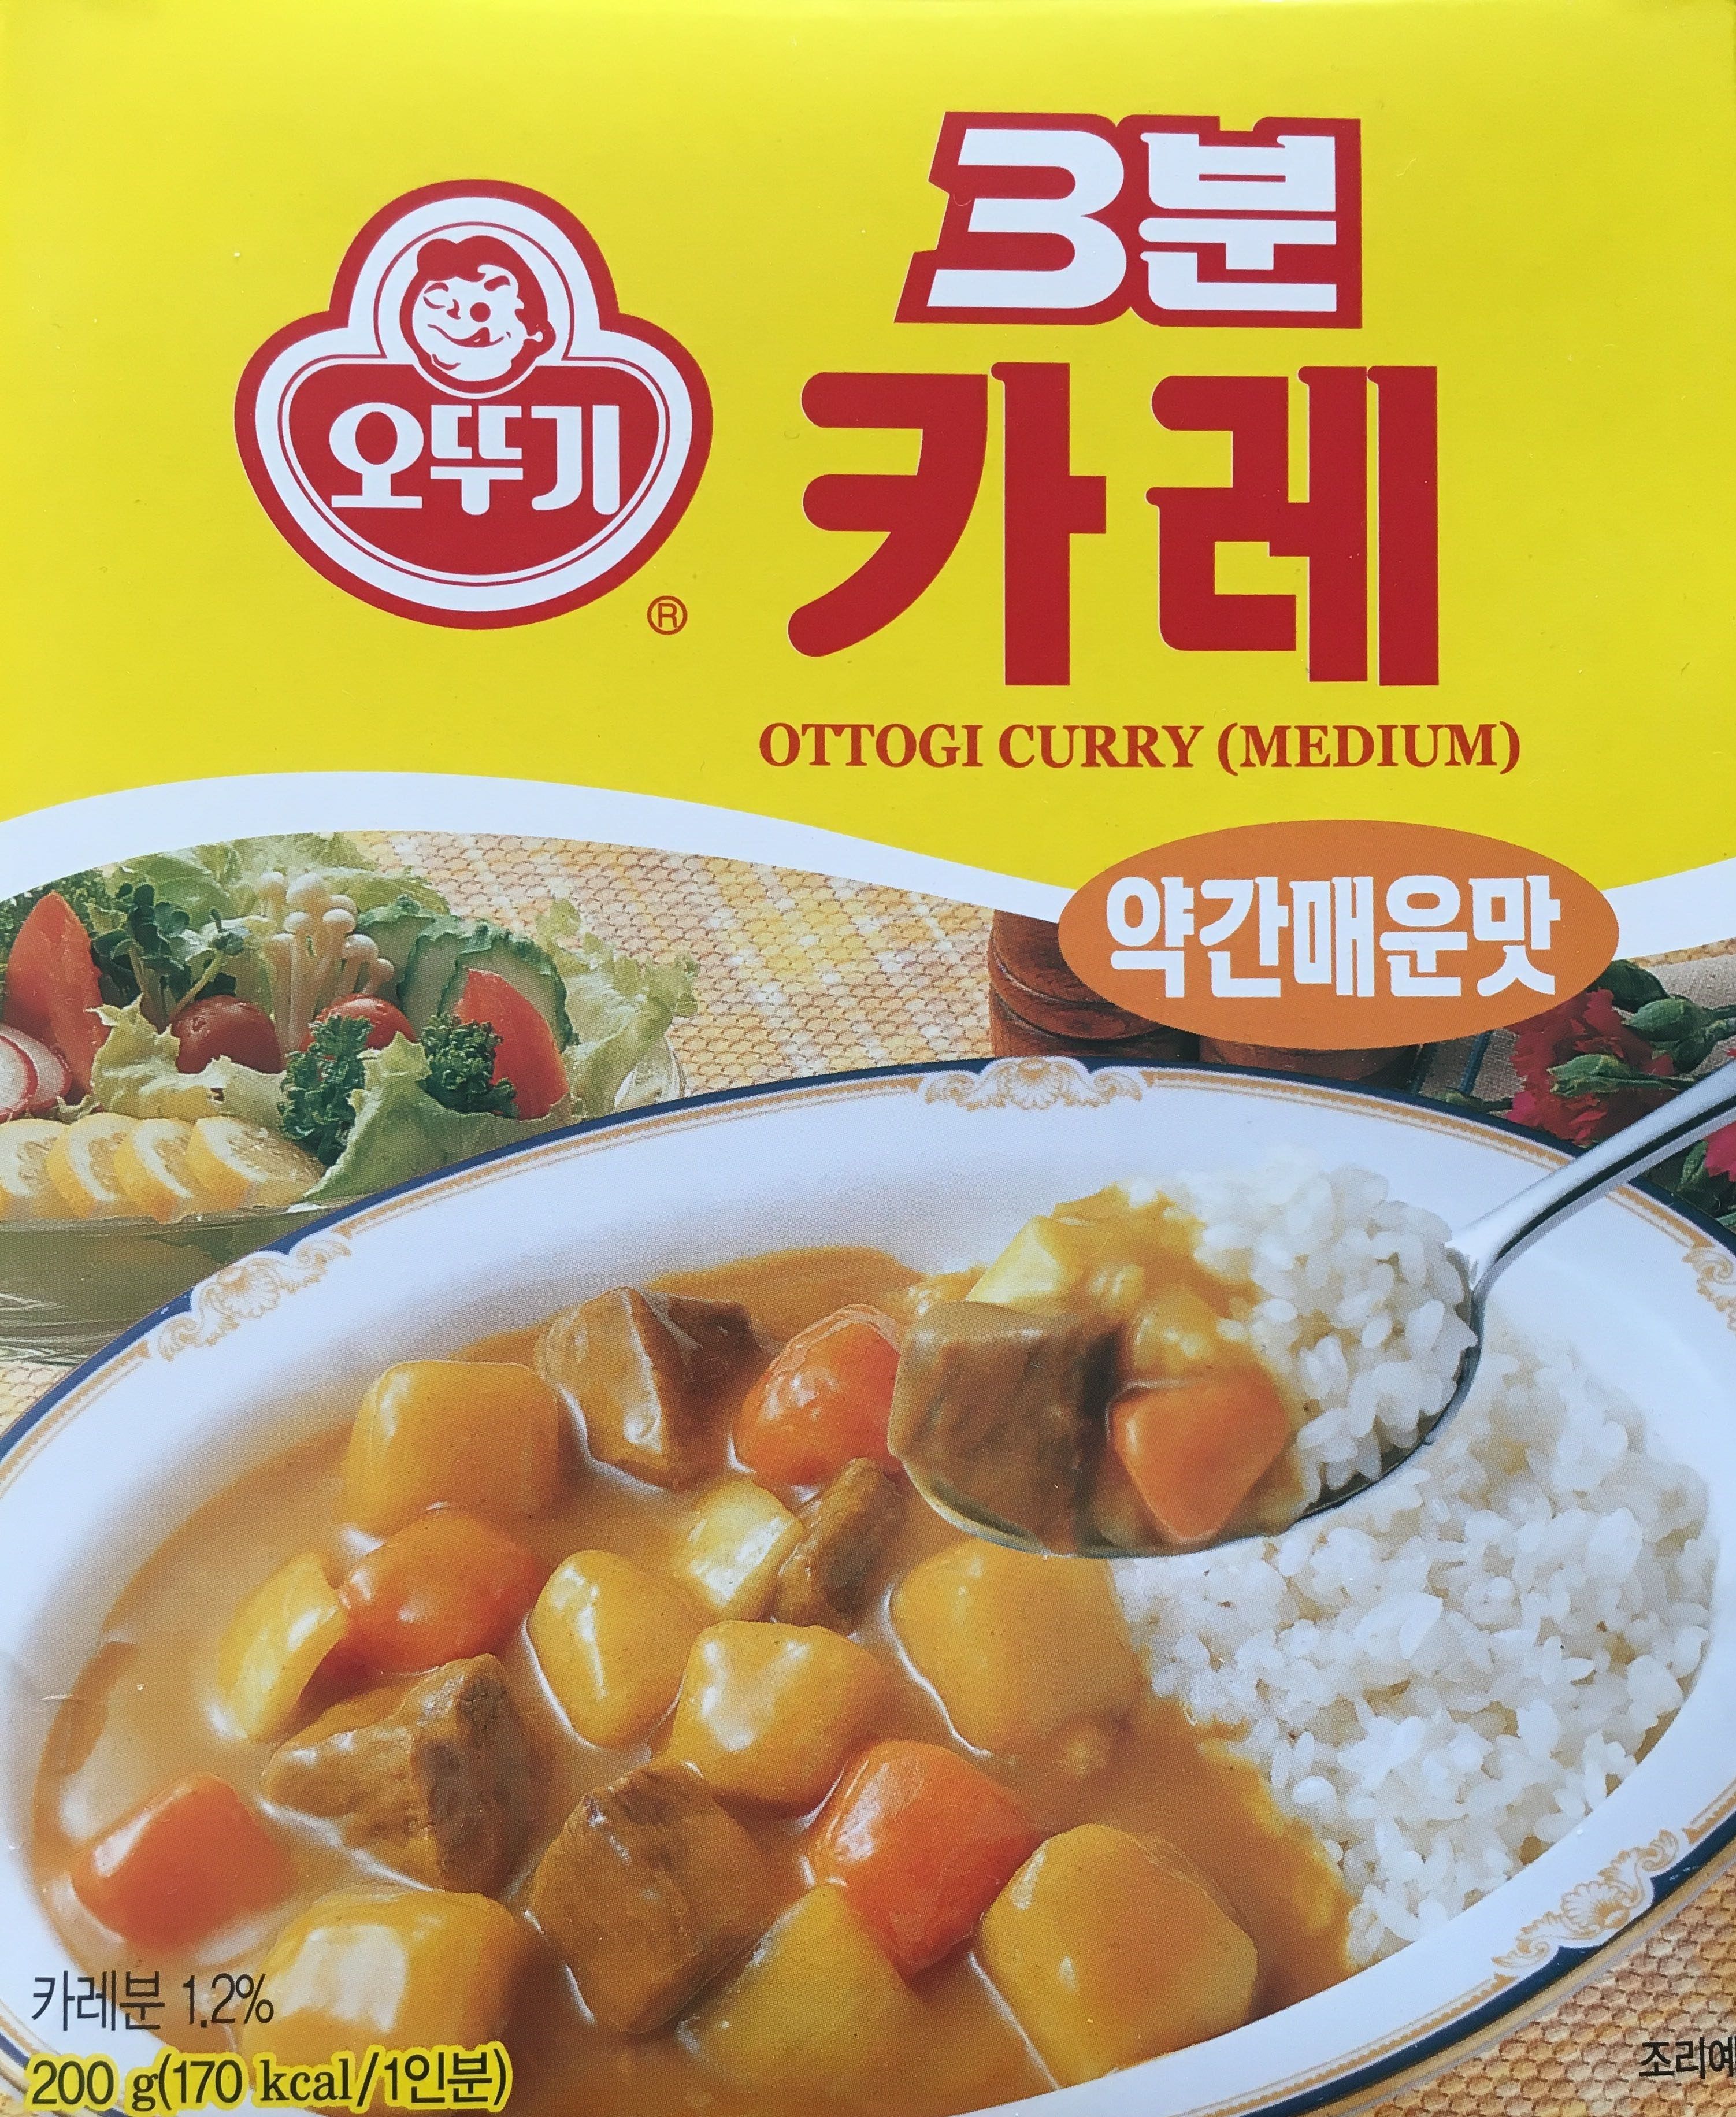 不倒翁 3分钟即食咖喱【中辣 MEDIUM】韩国进口 速食咖喱盖浇拌饭酱 (蒸煮袋) 200g